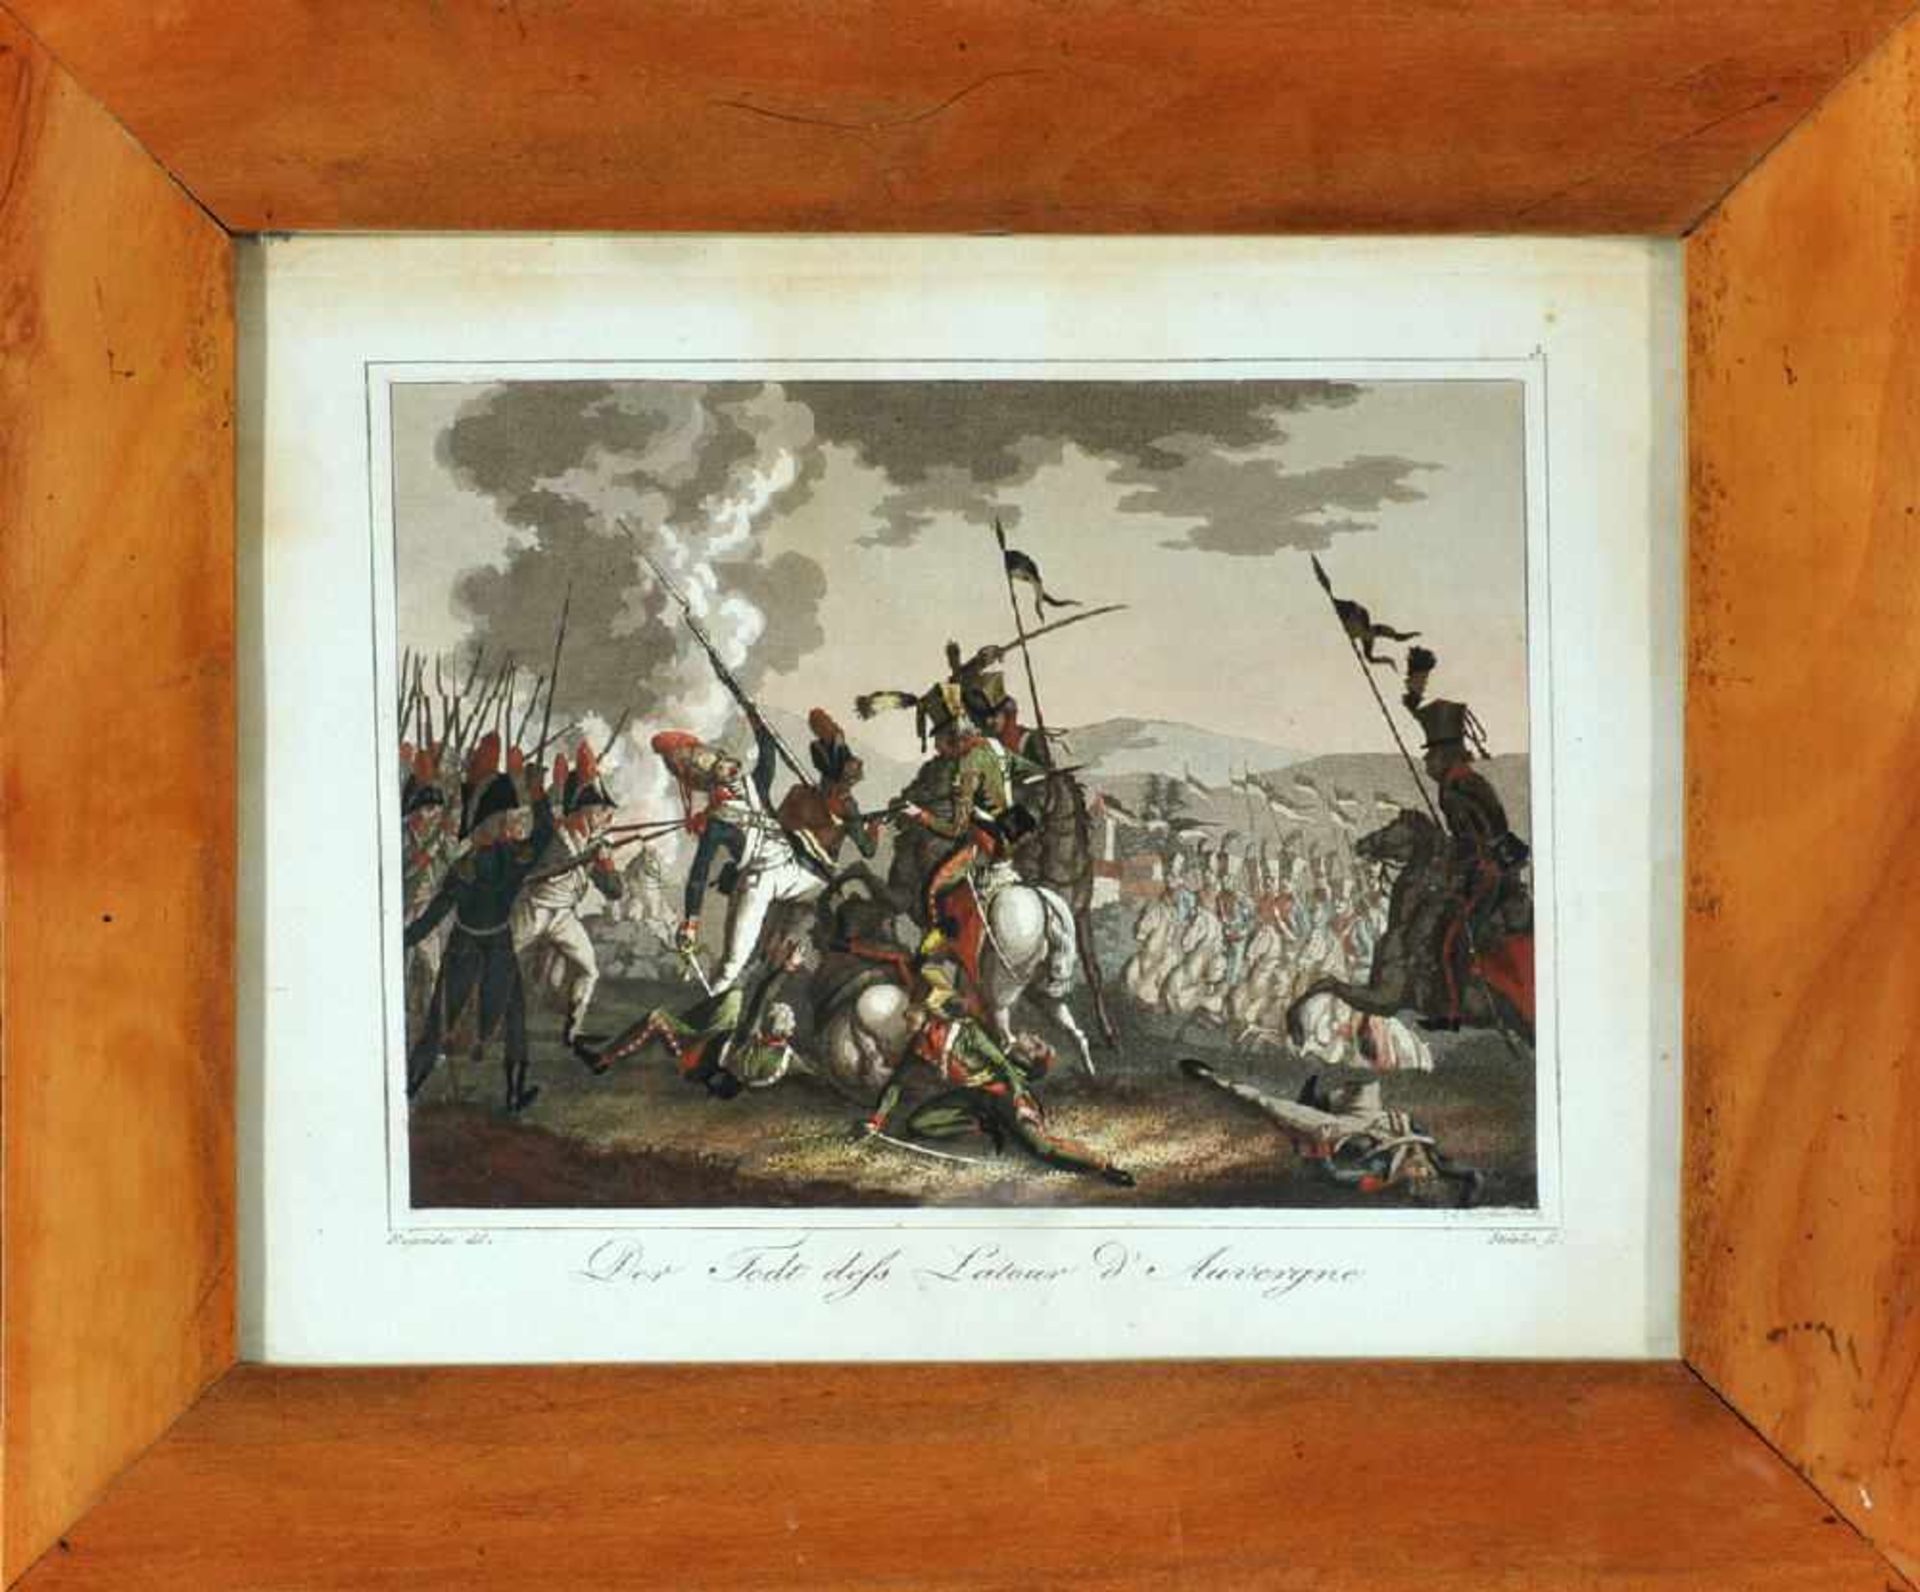 Lithographie, 19. Jh.handcolor., 13 x 17,5 cm, betit. " Der Todt deß Latour d'Auvergne ", von